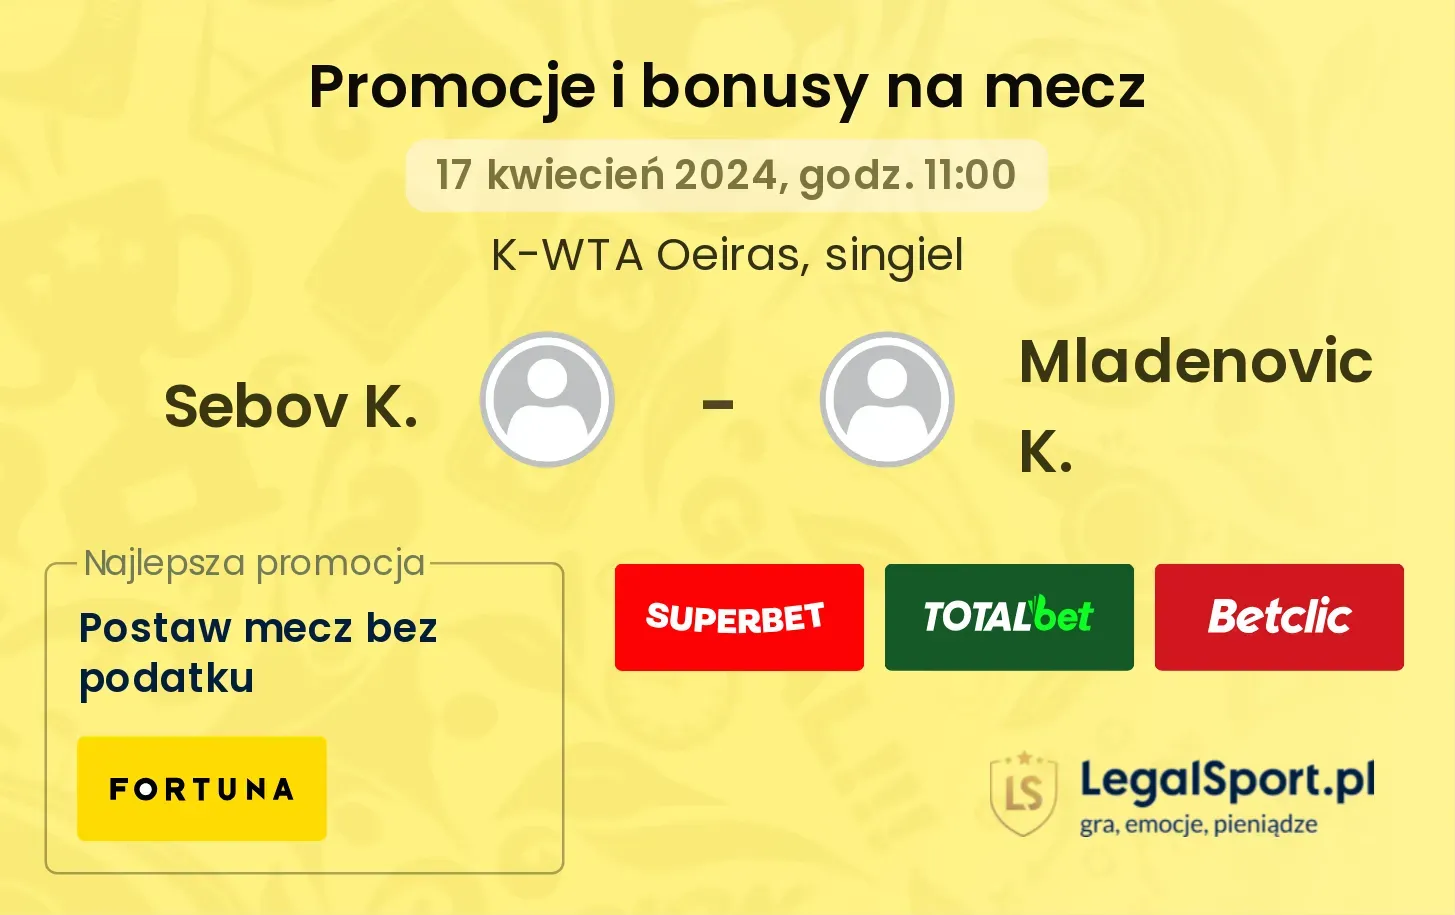 Sebov K. - Mladenovic K. promocje bonusy na mecz